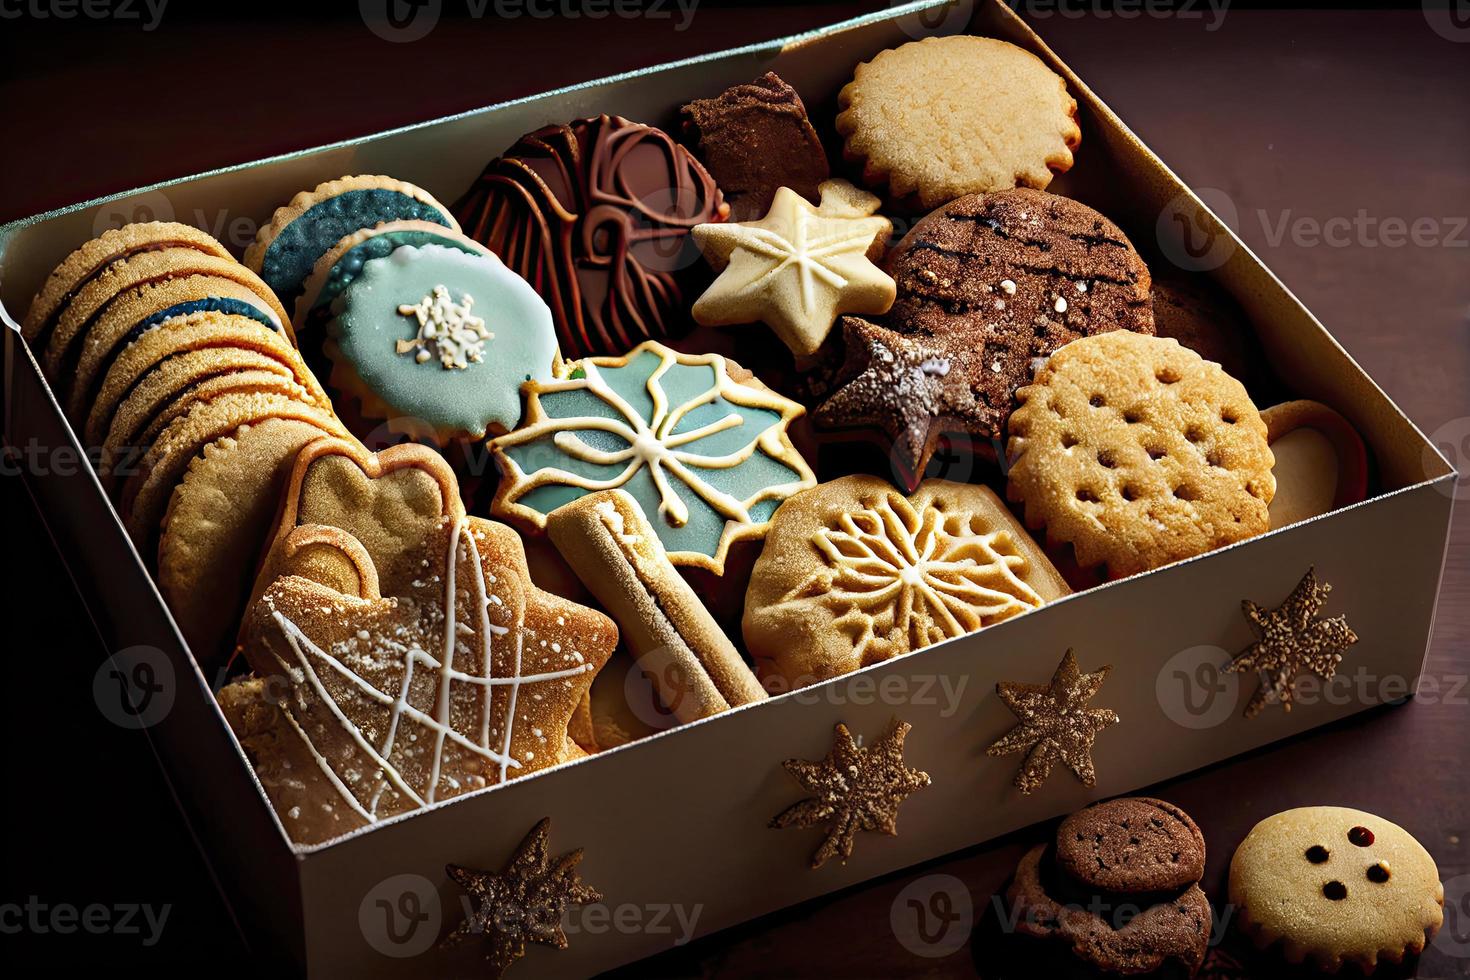 sortiert Weihnachten Kekse im ein Box foto